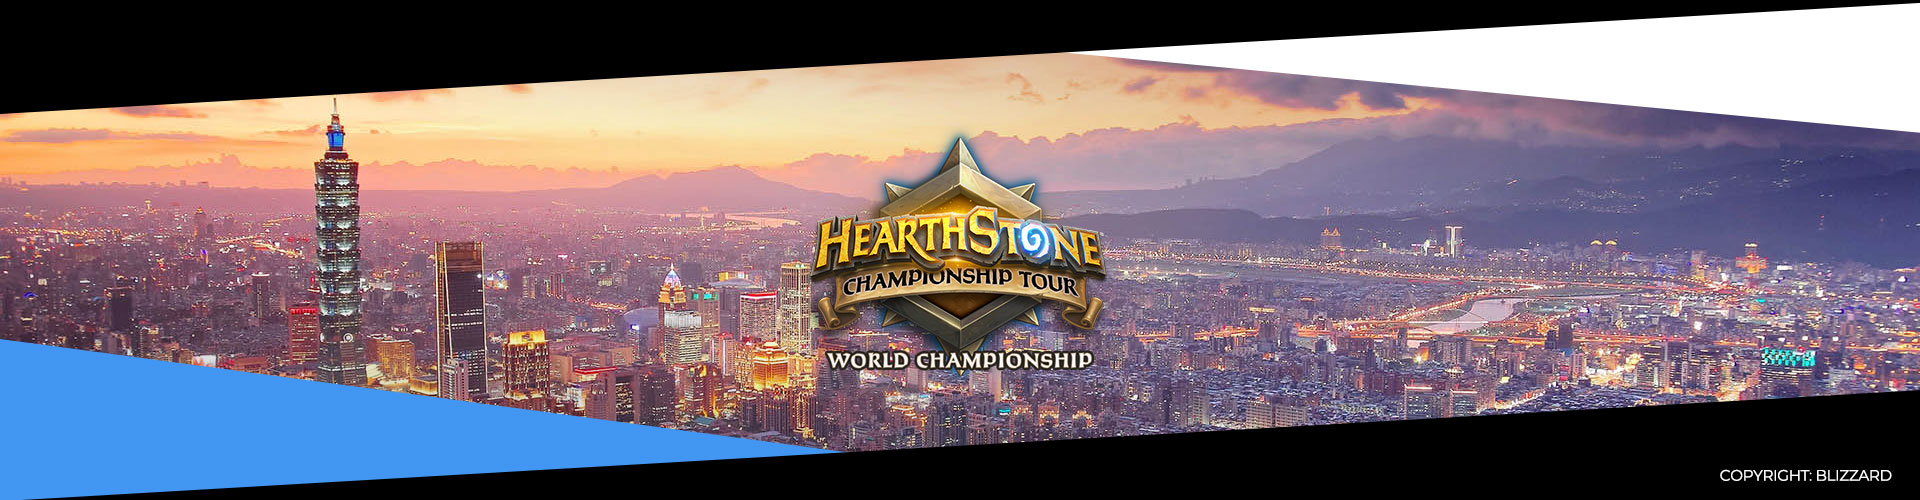 Hearthstone World Championship 2019 - Päivä 4